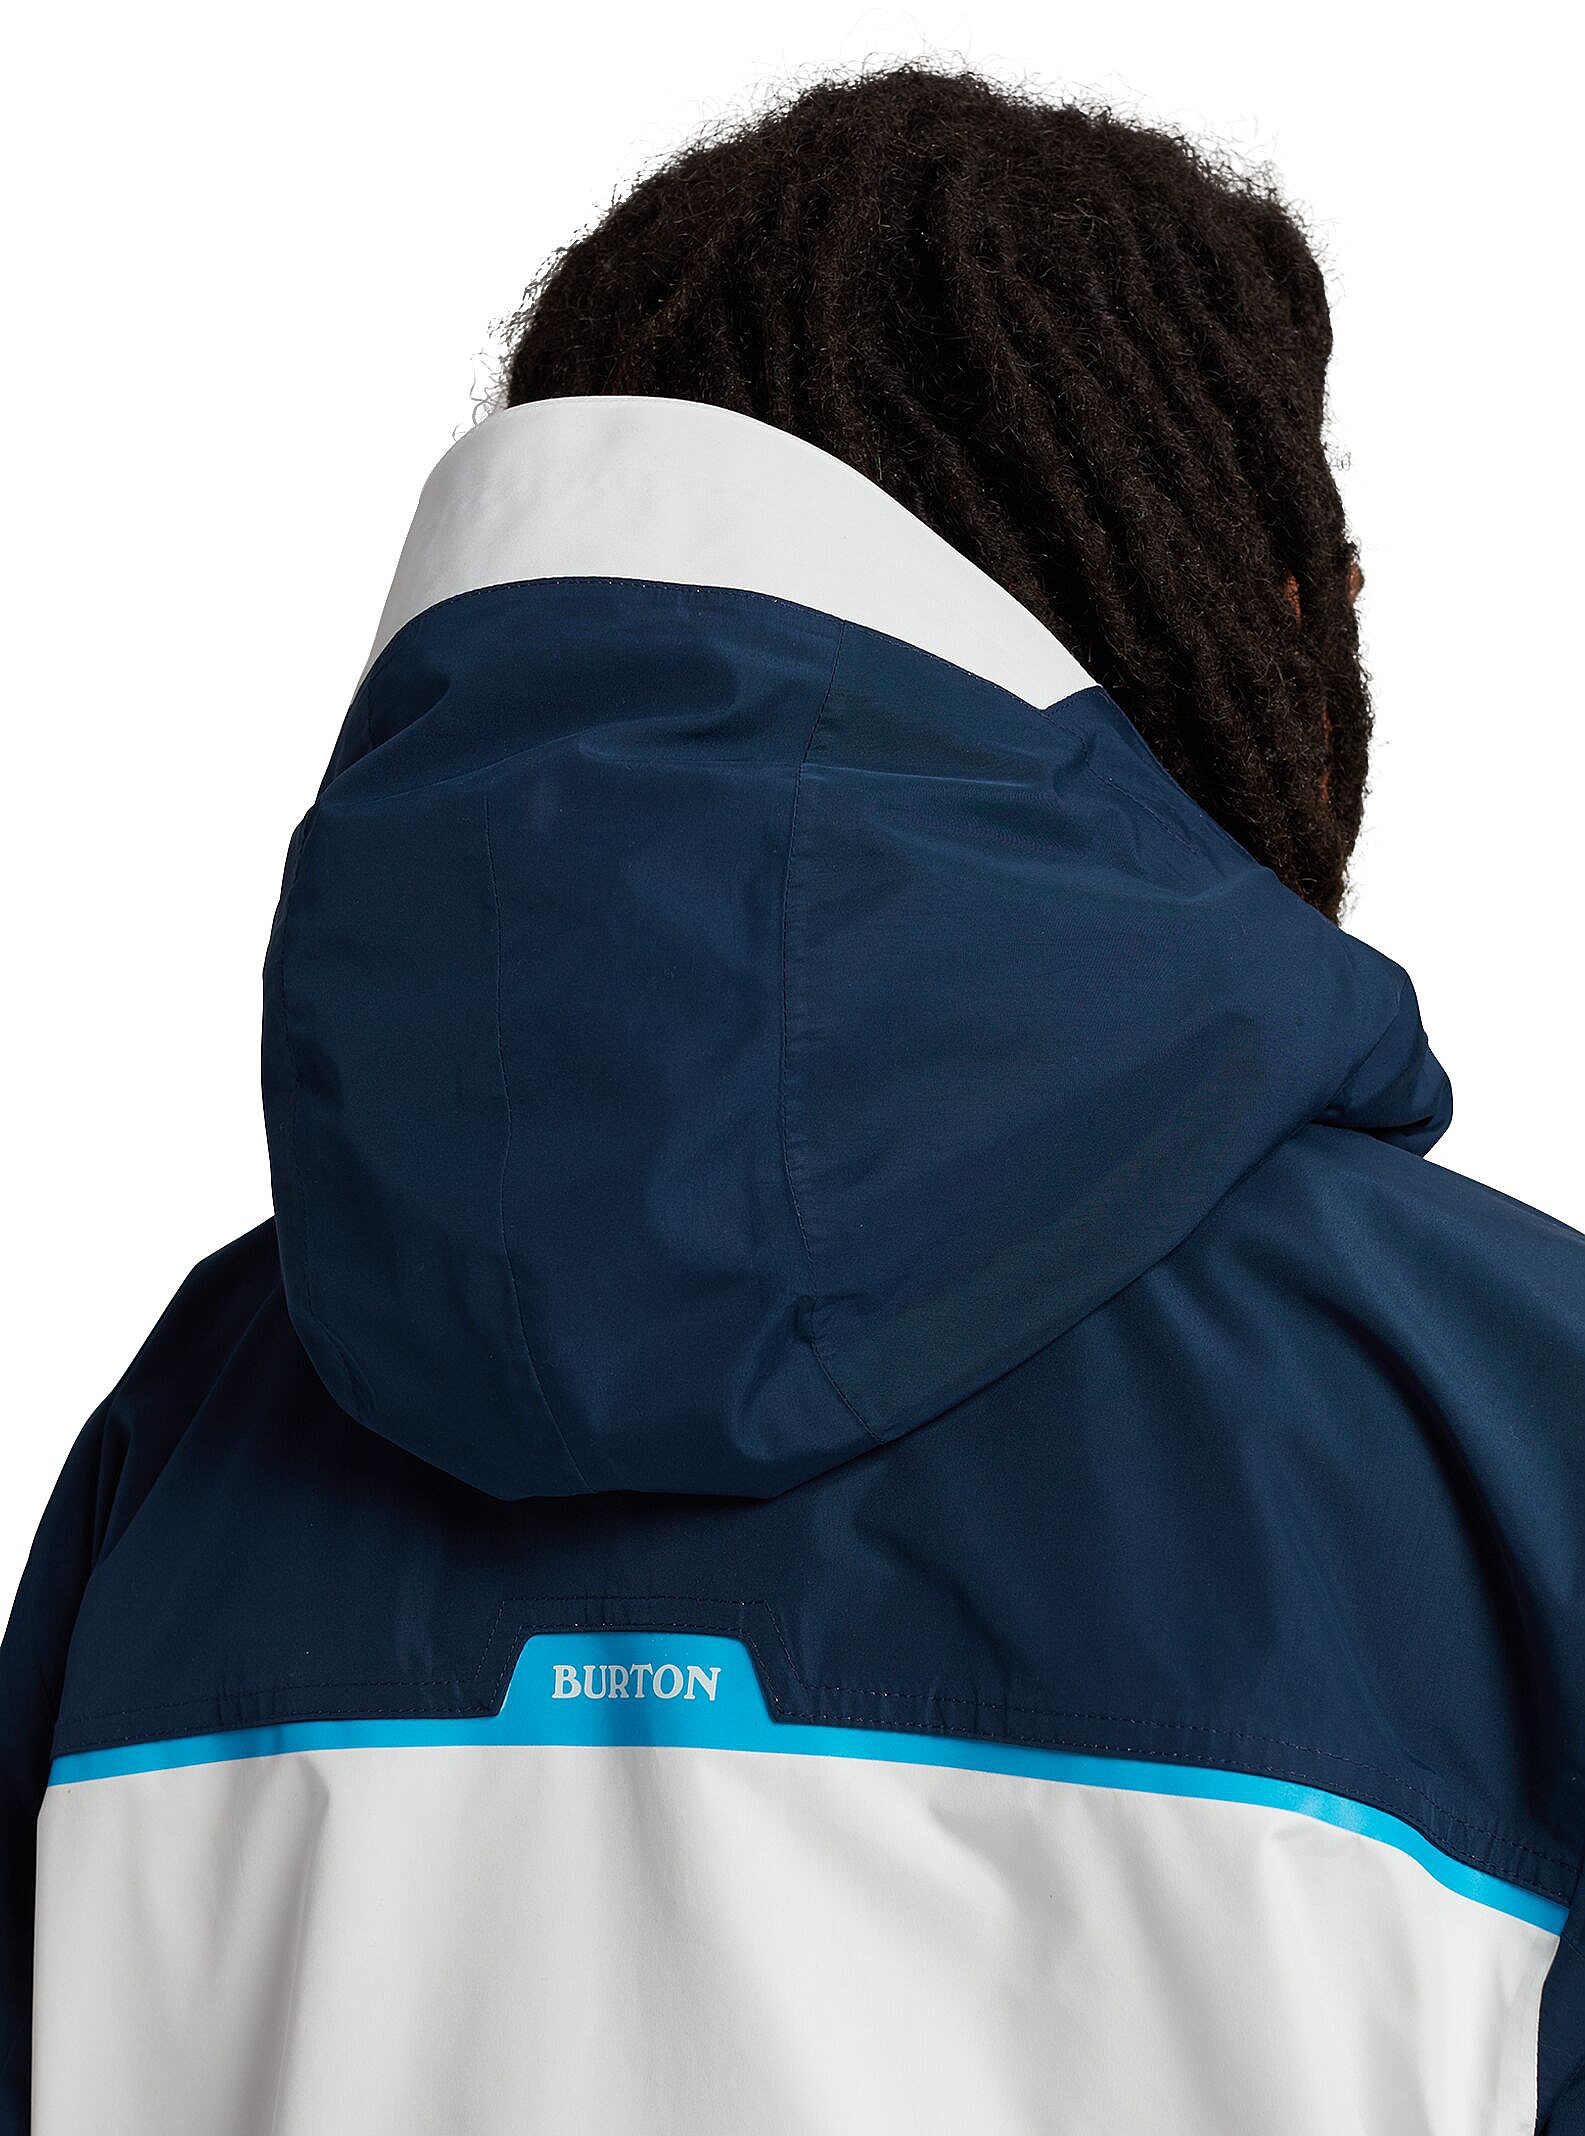 Burton Frostner jacket | Morgan Board-shop